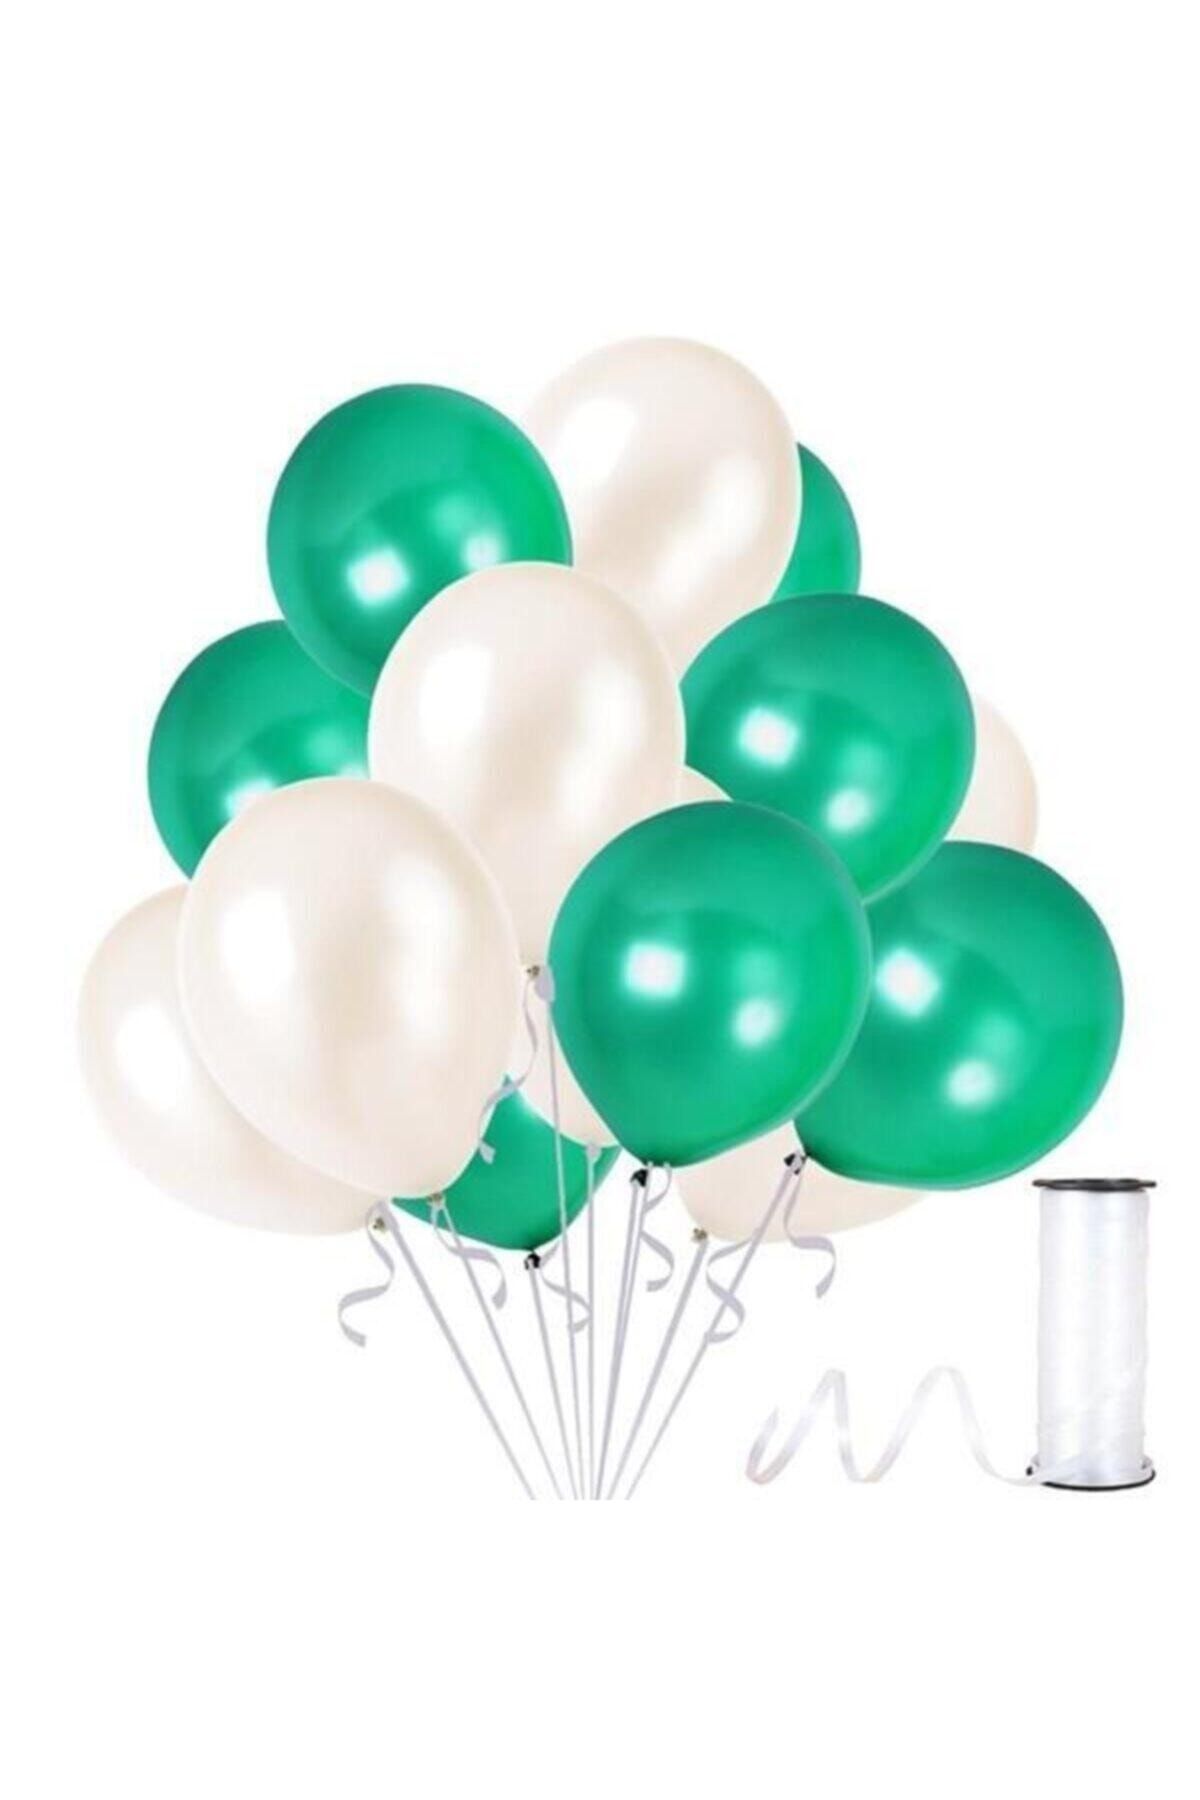 HKNYS 75 Adet Metalik Balon (koyu Yeşil - Beyaz )- Helyum Gazı Uyumludur.-5 Metre Balon Zıncırı Hediye